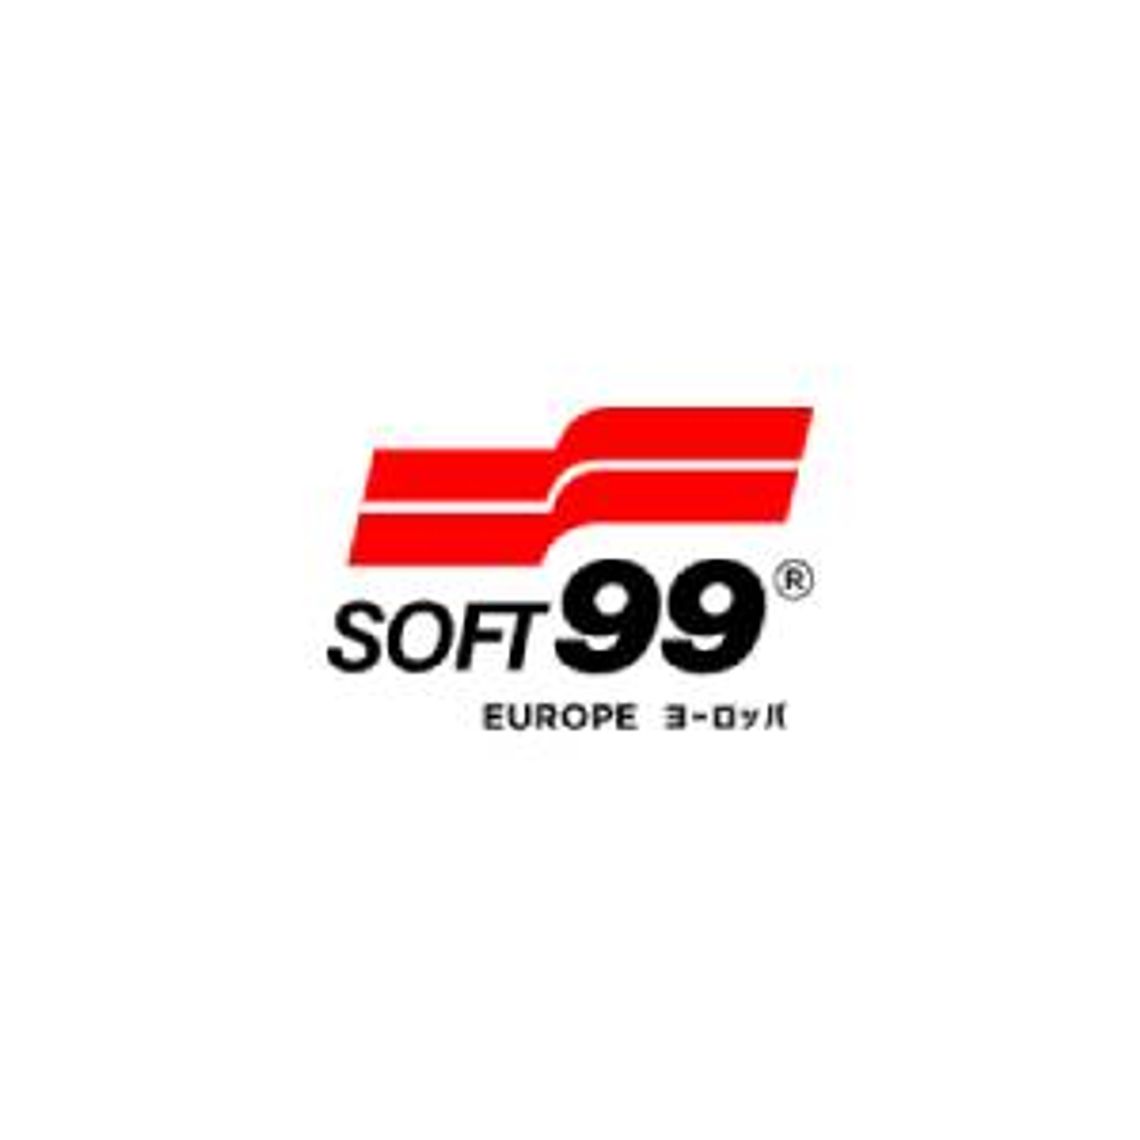 Akcesoria samochodowe - Soft99